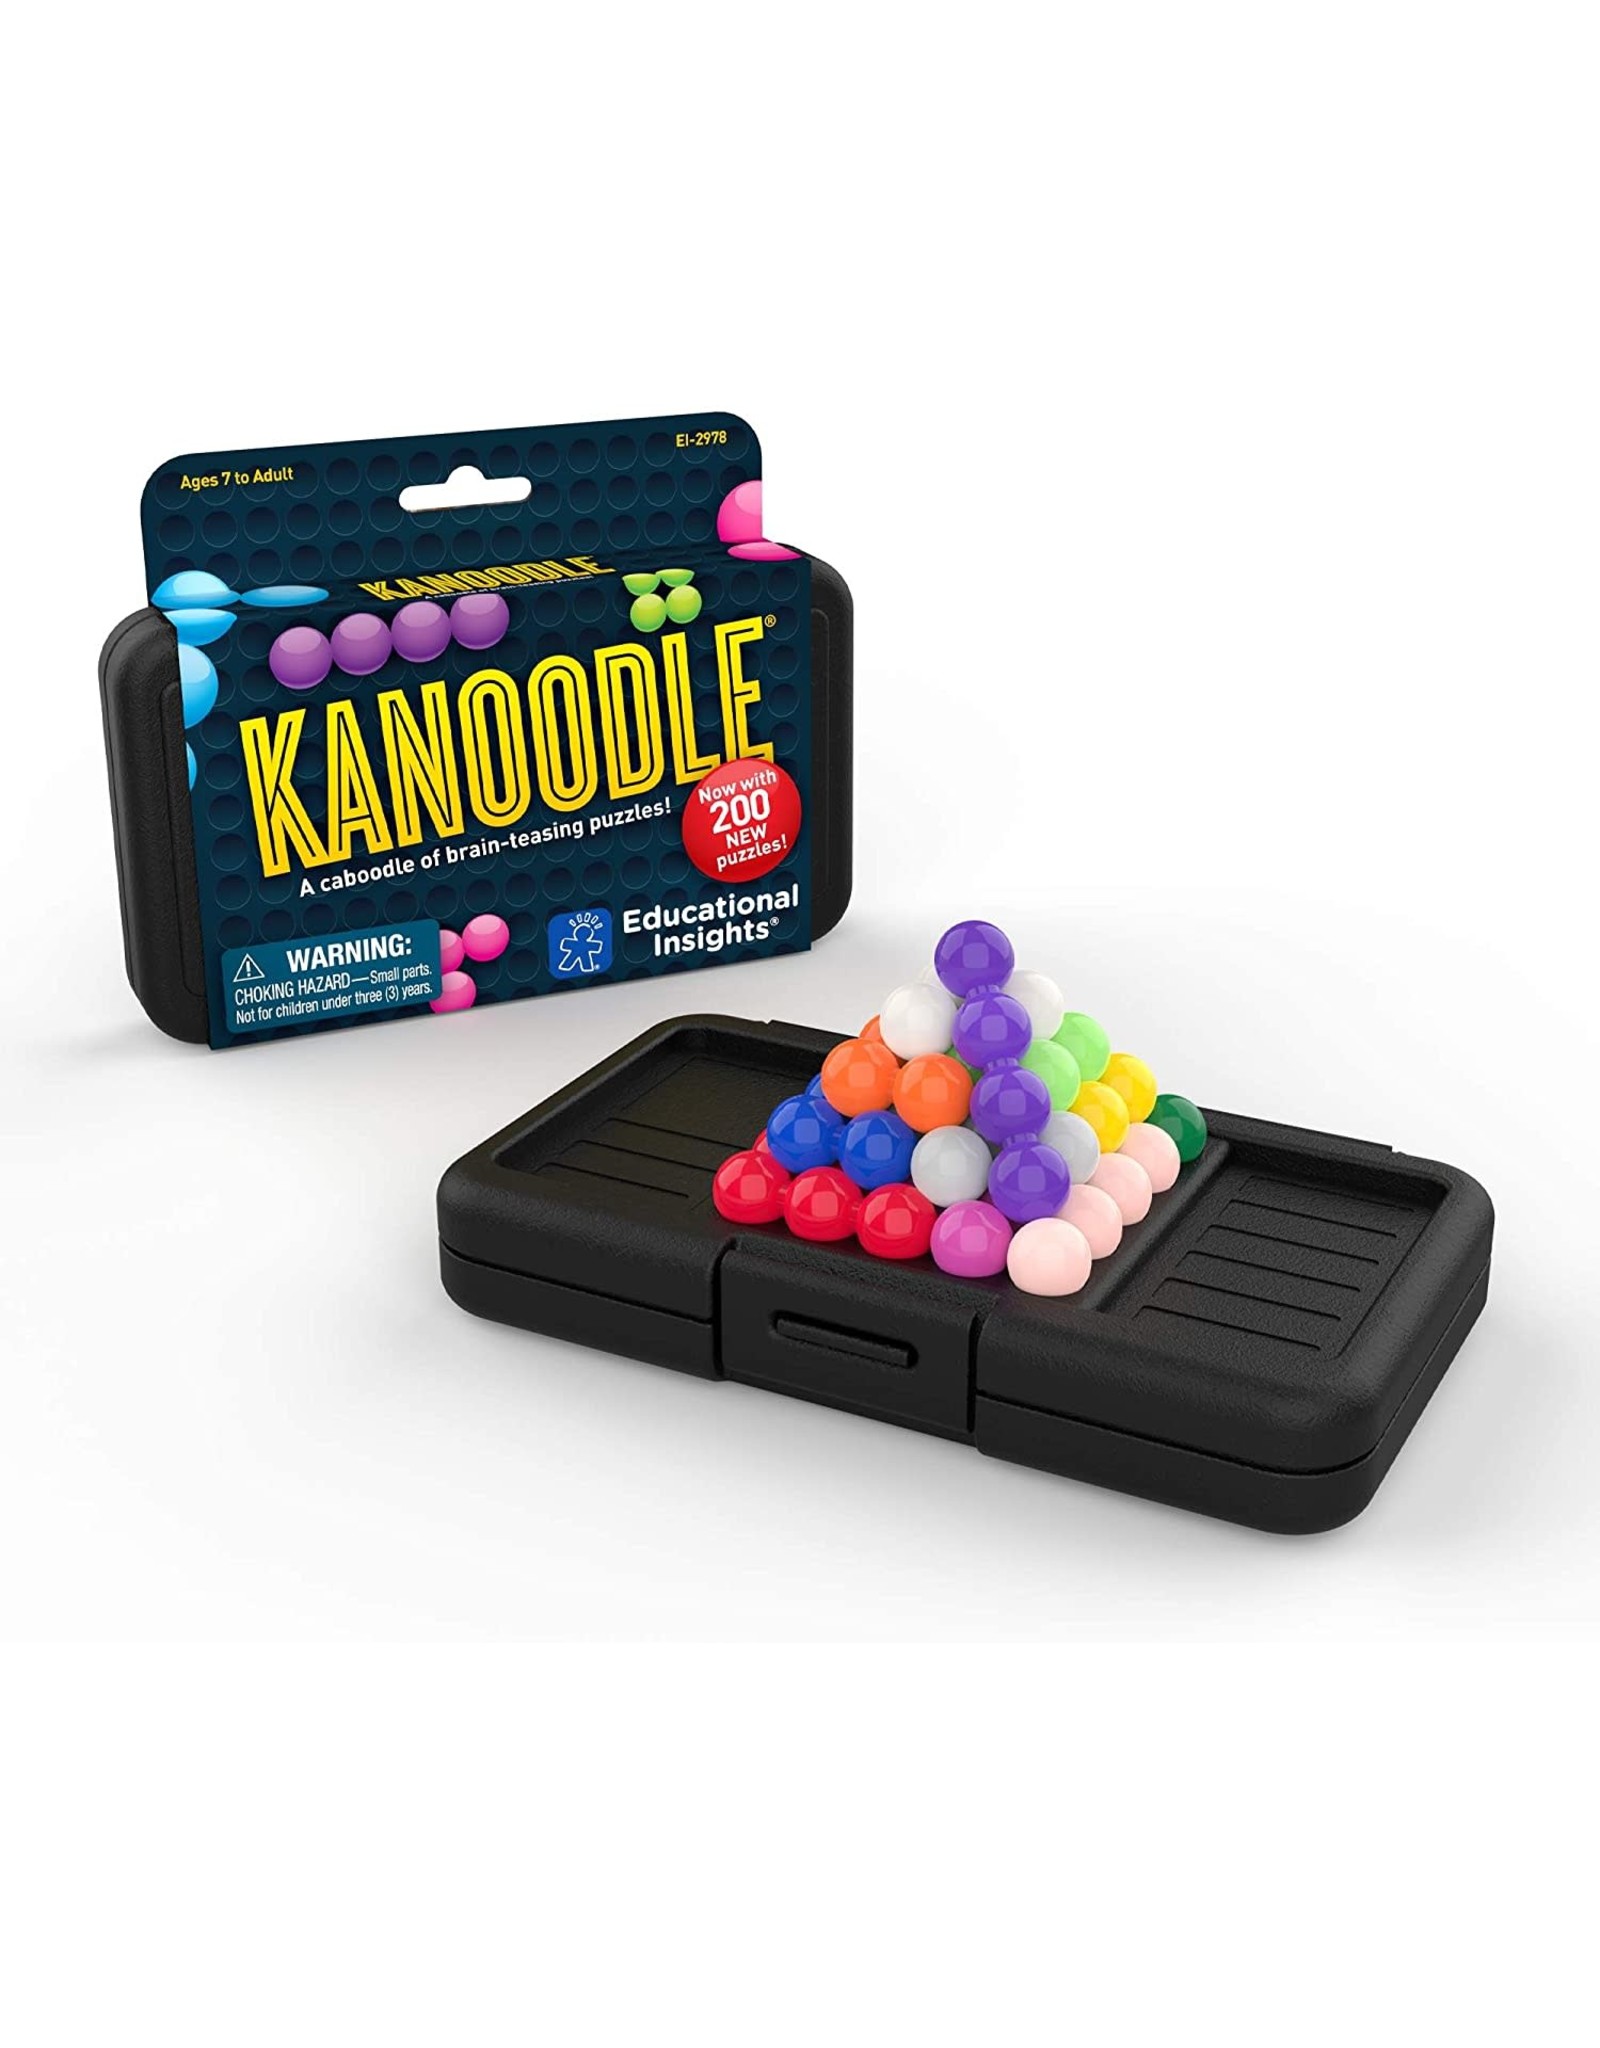 kanoodle jr game